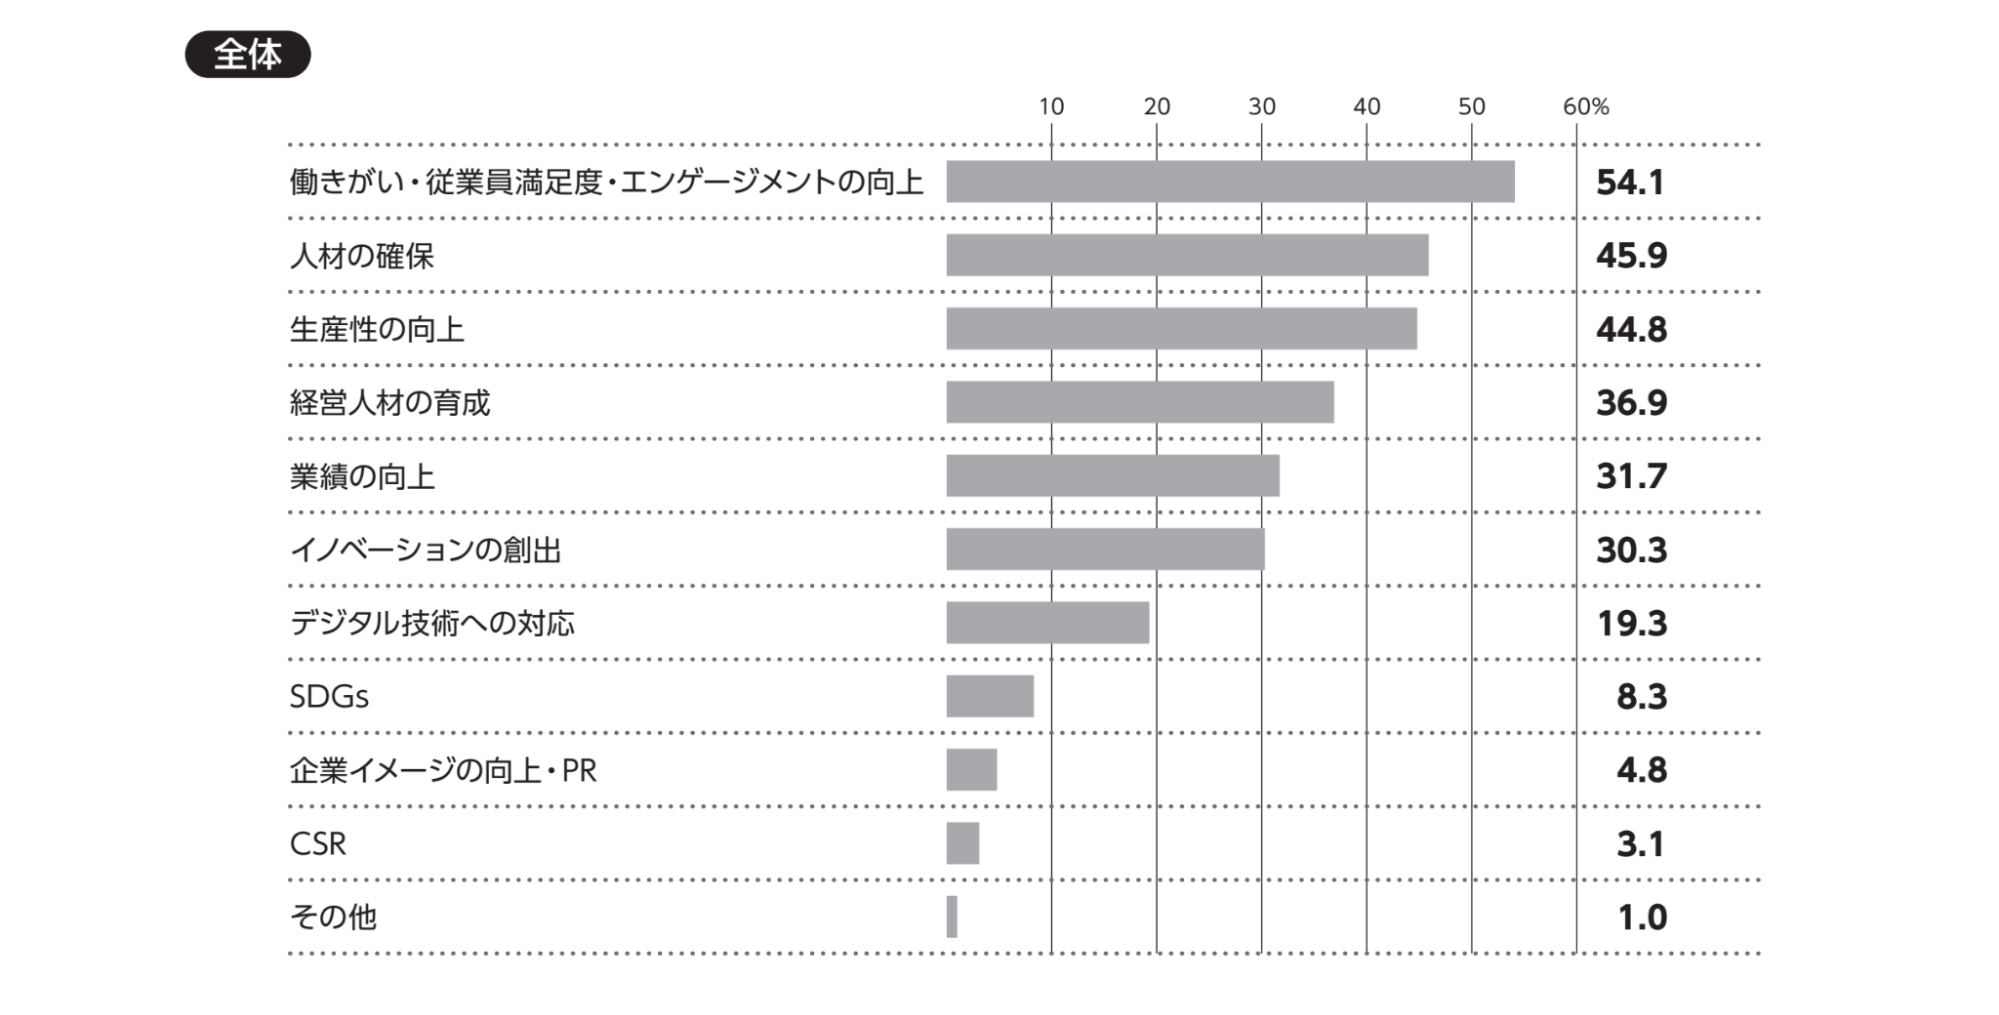 『日本の人事部 人事白書2021』現在の経営課題の結果グラフ